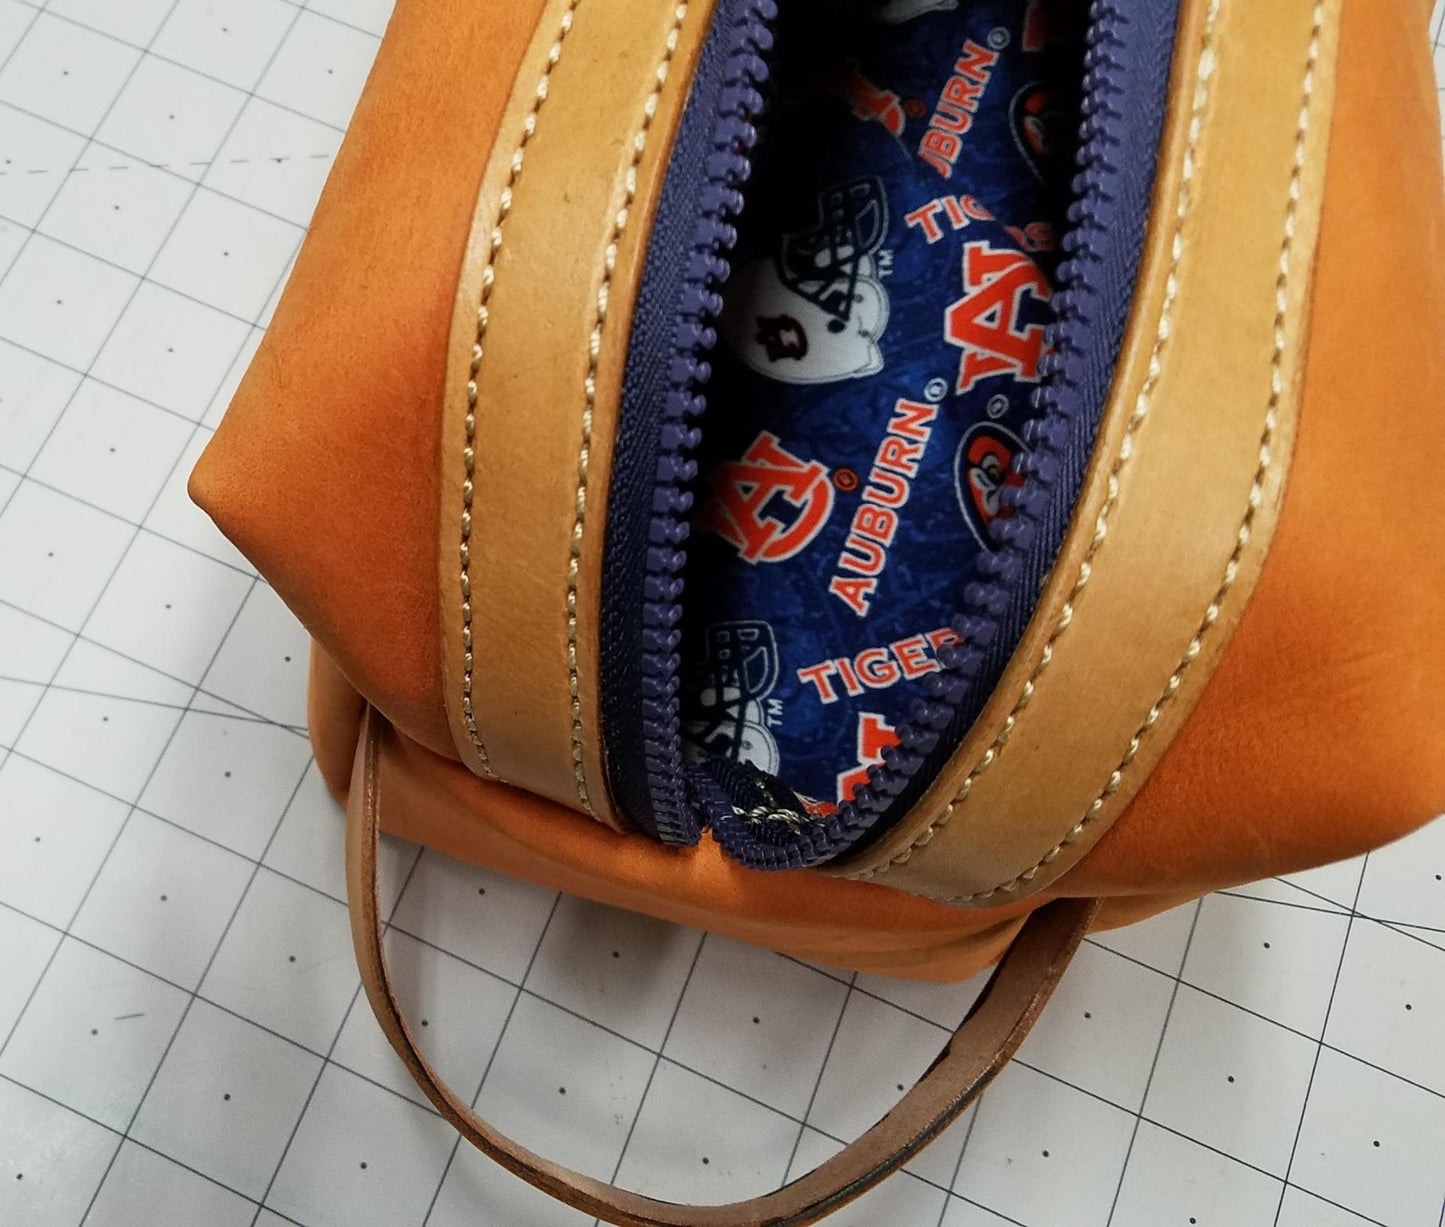 Travel Bag with Auburn Theme